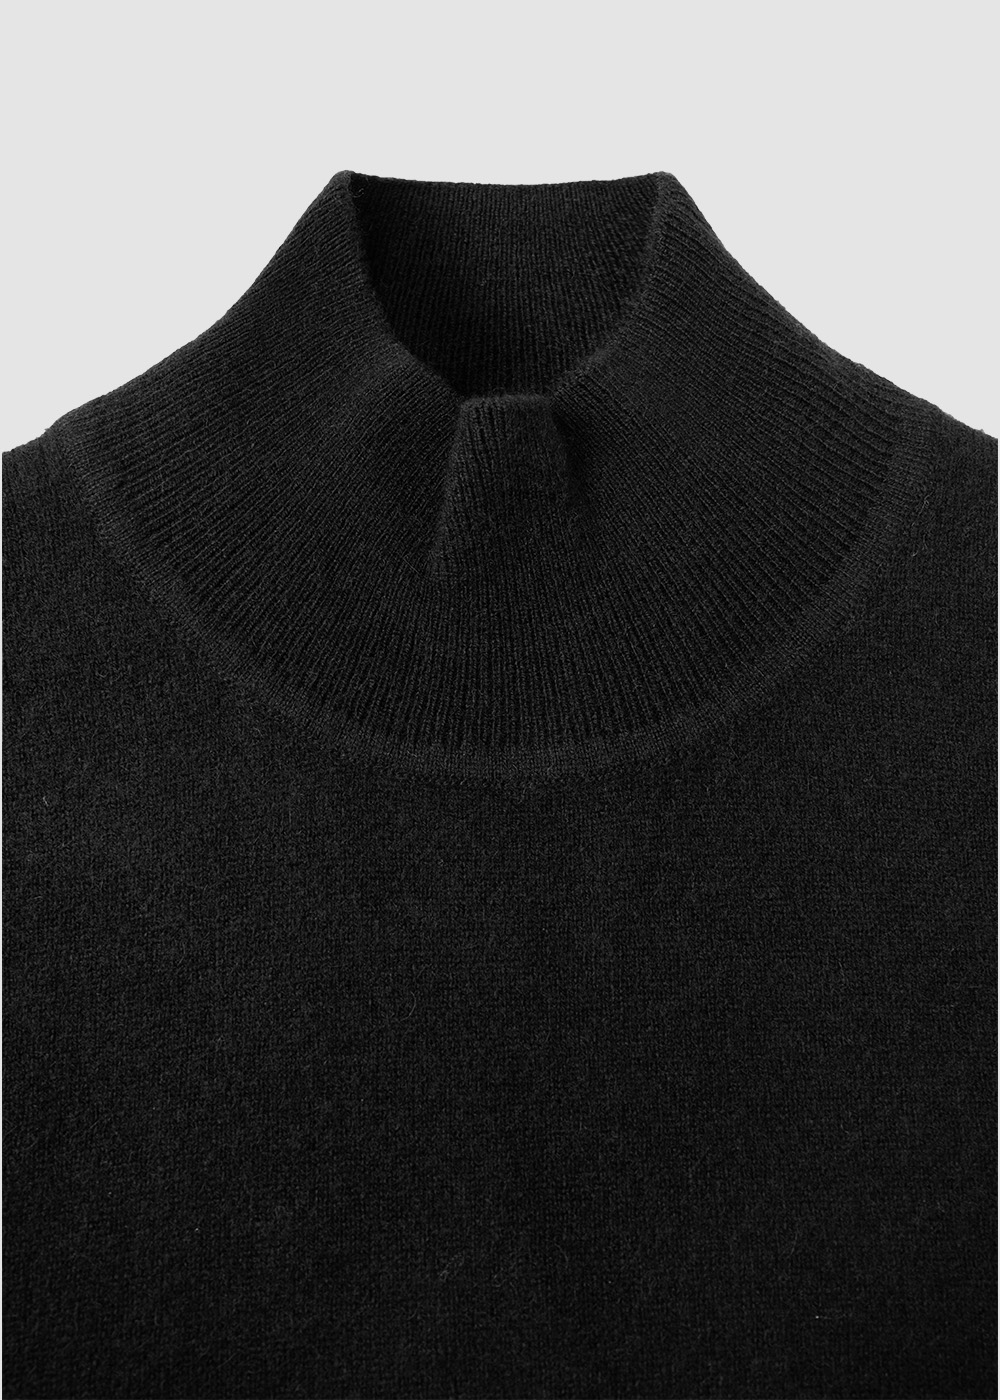 Cashmere 30% Blended Mockneck Knit _ black